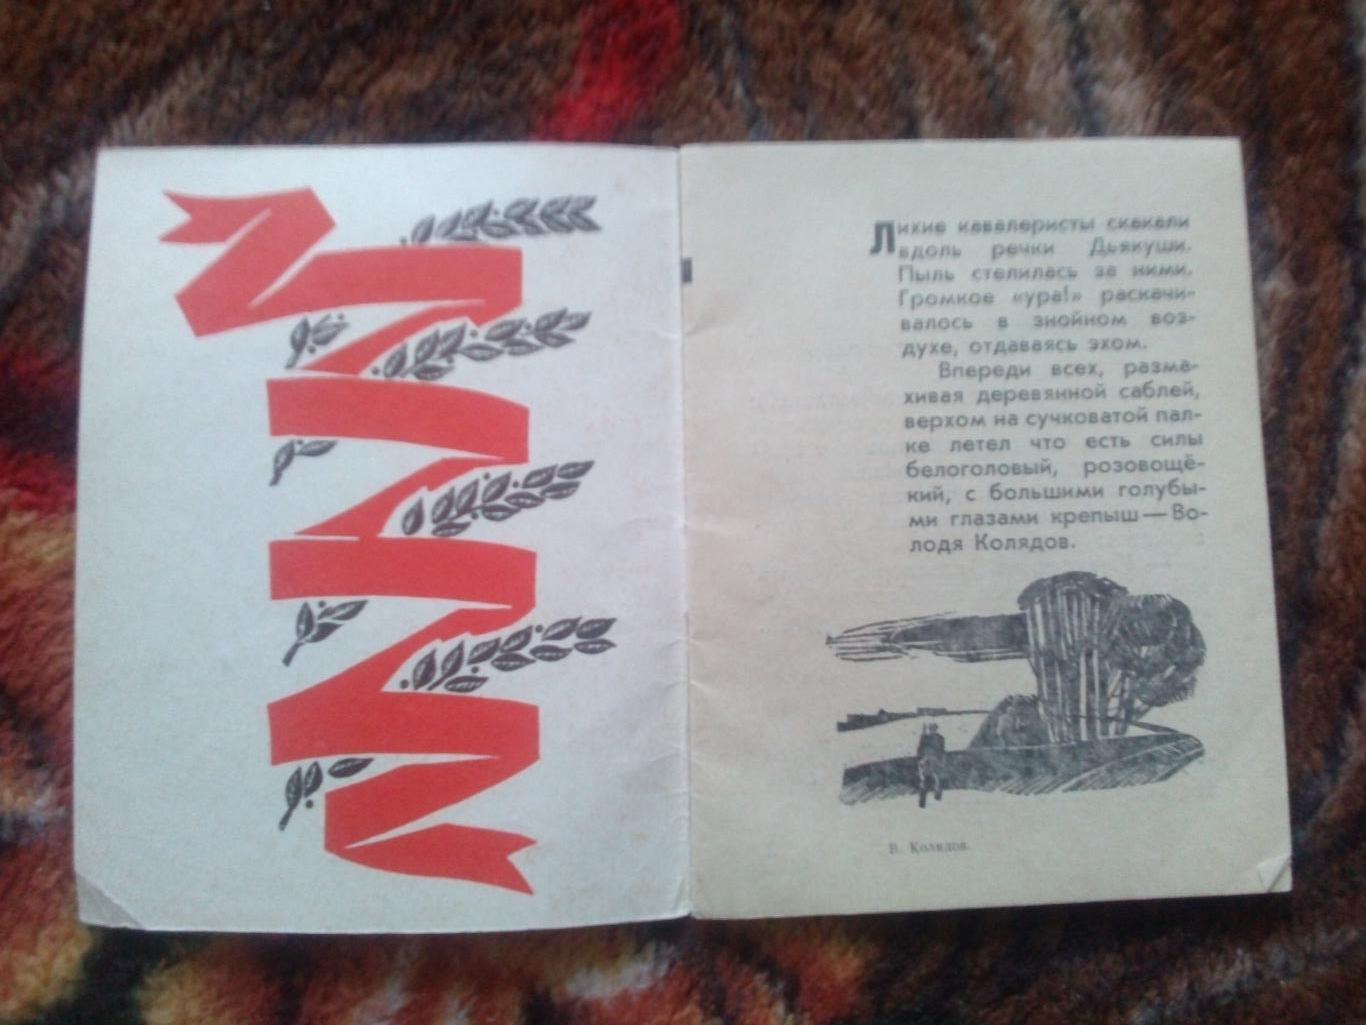 Пионеры-герои (Плакат + брошюра) 1967 г. Володя Колядов (Пионер , агитация) 5